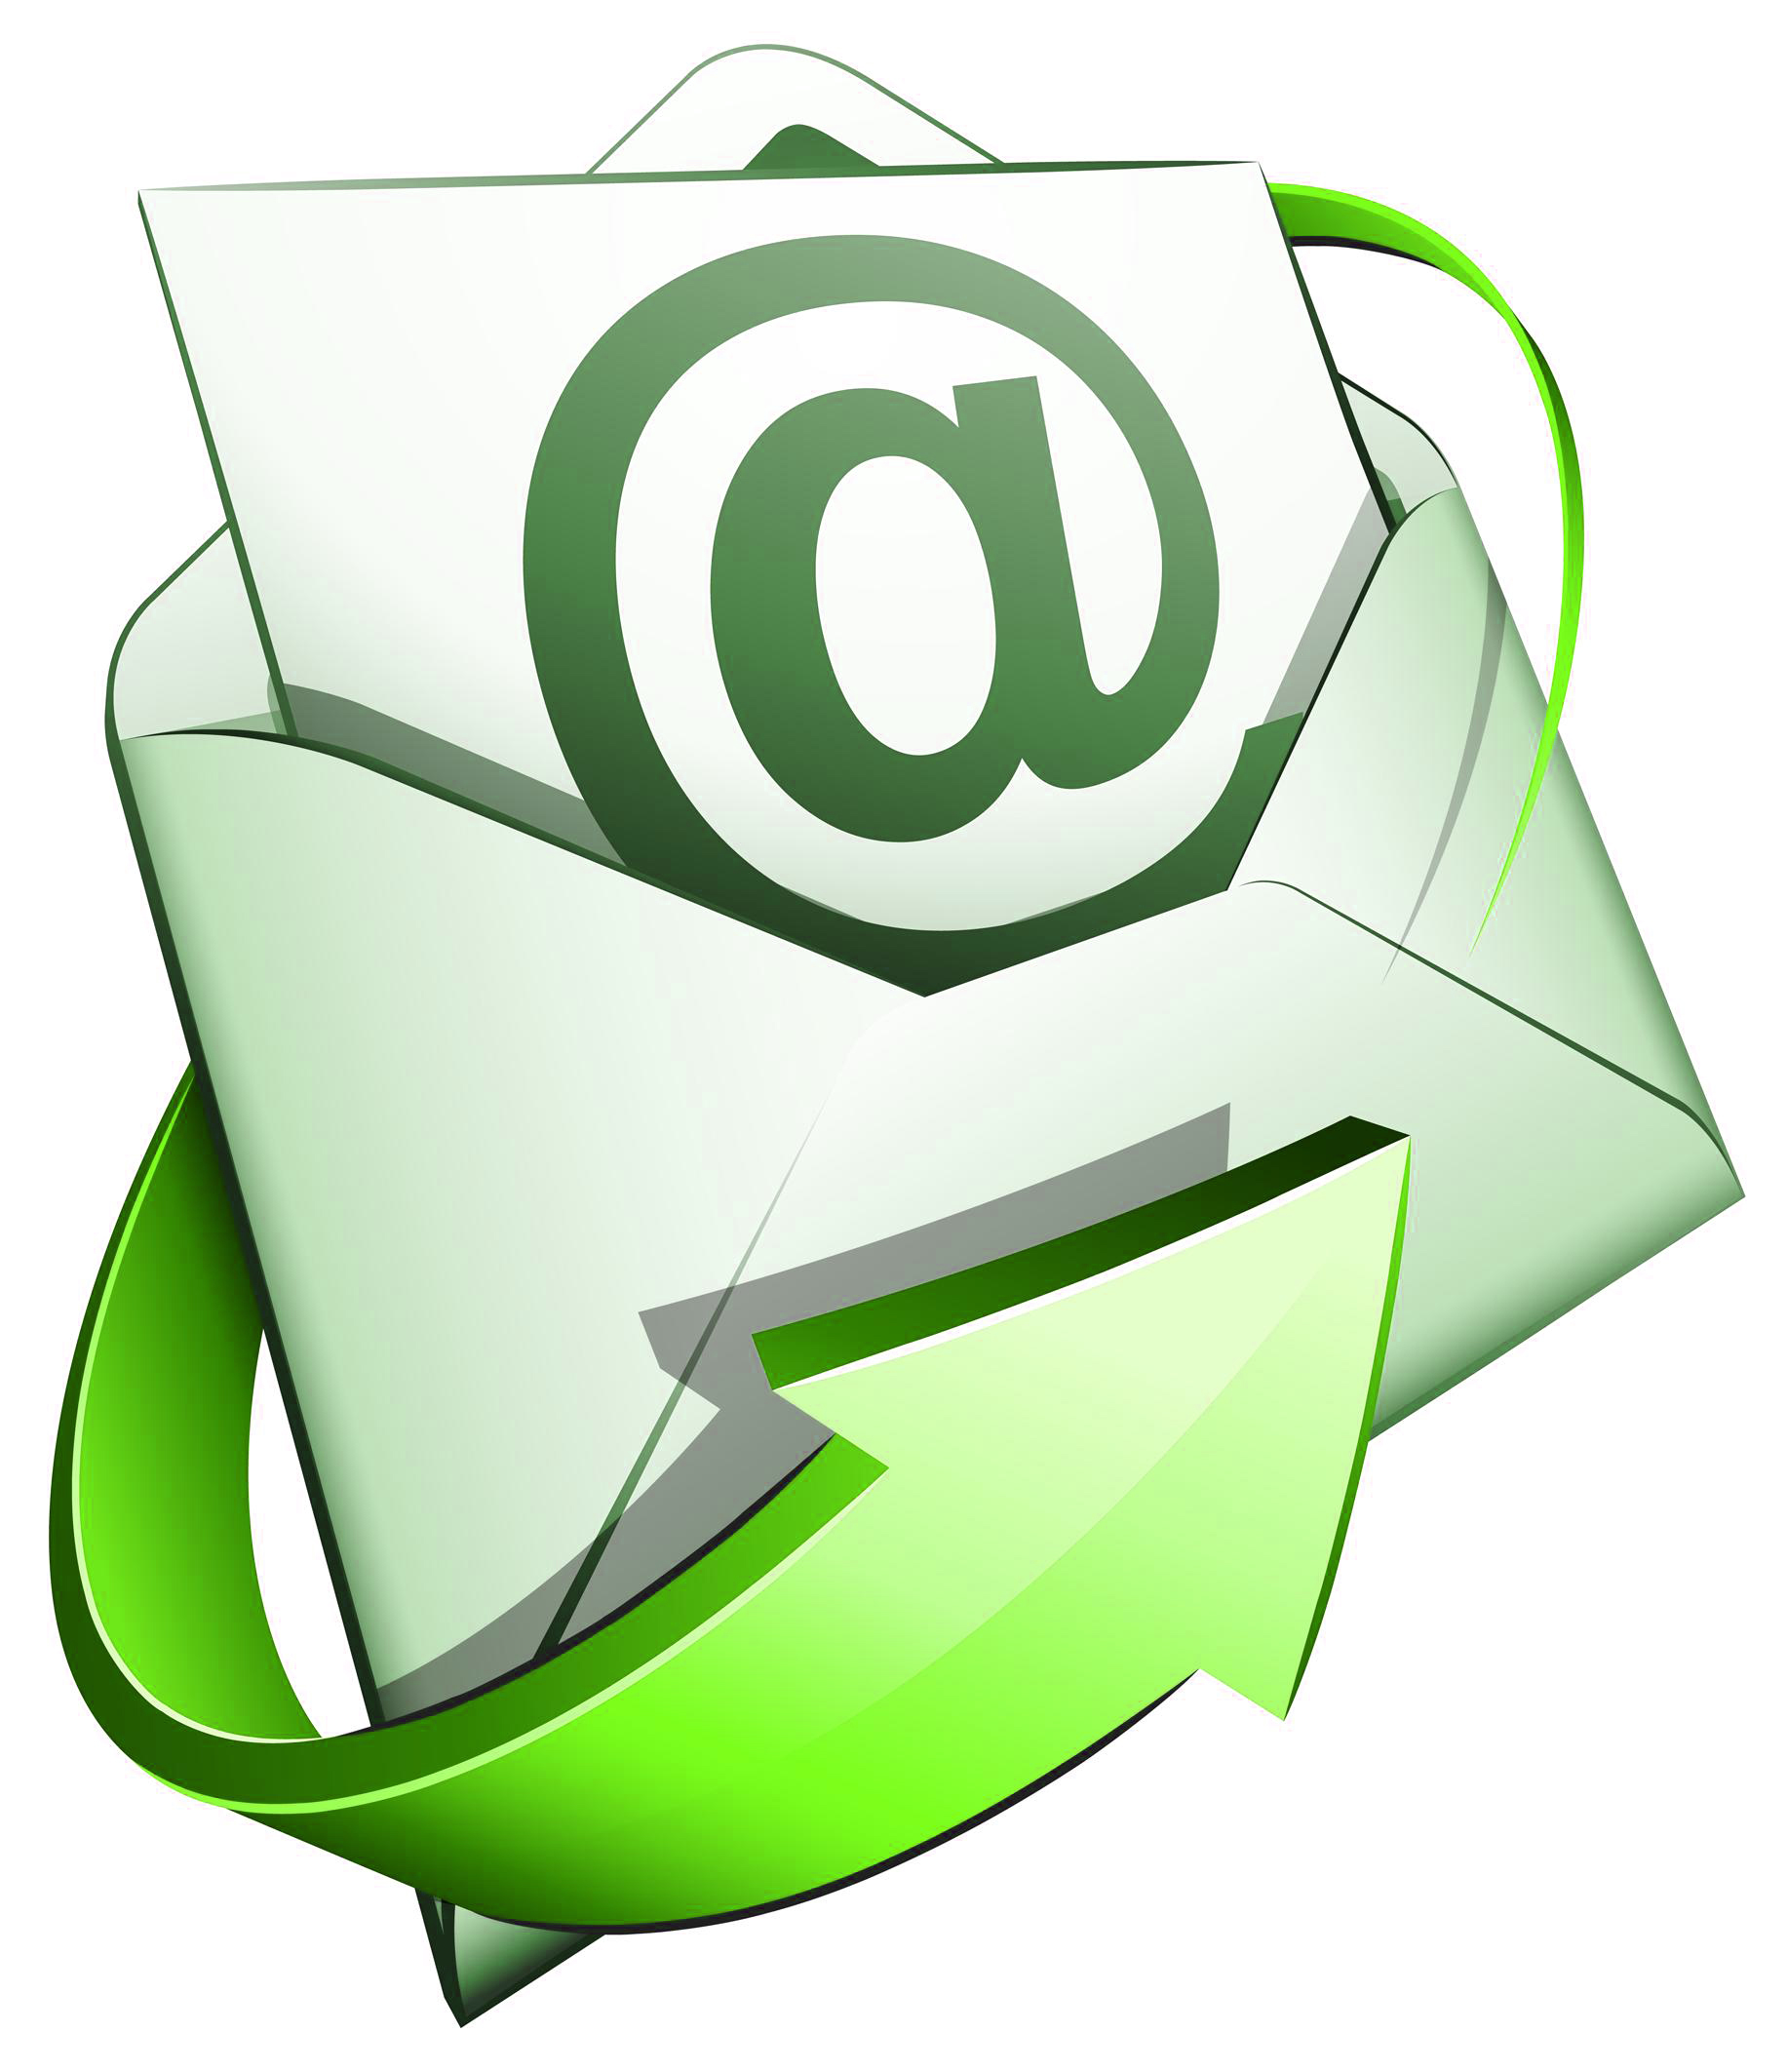 email_logo vert